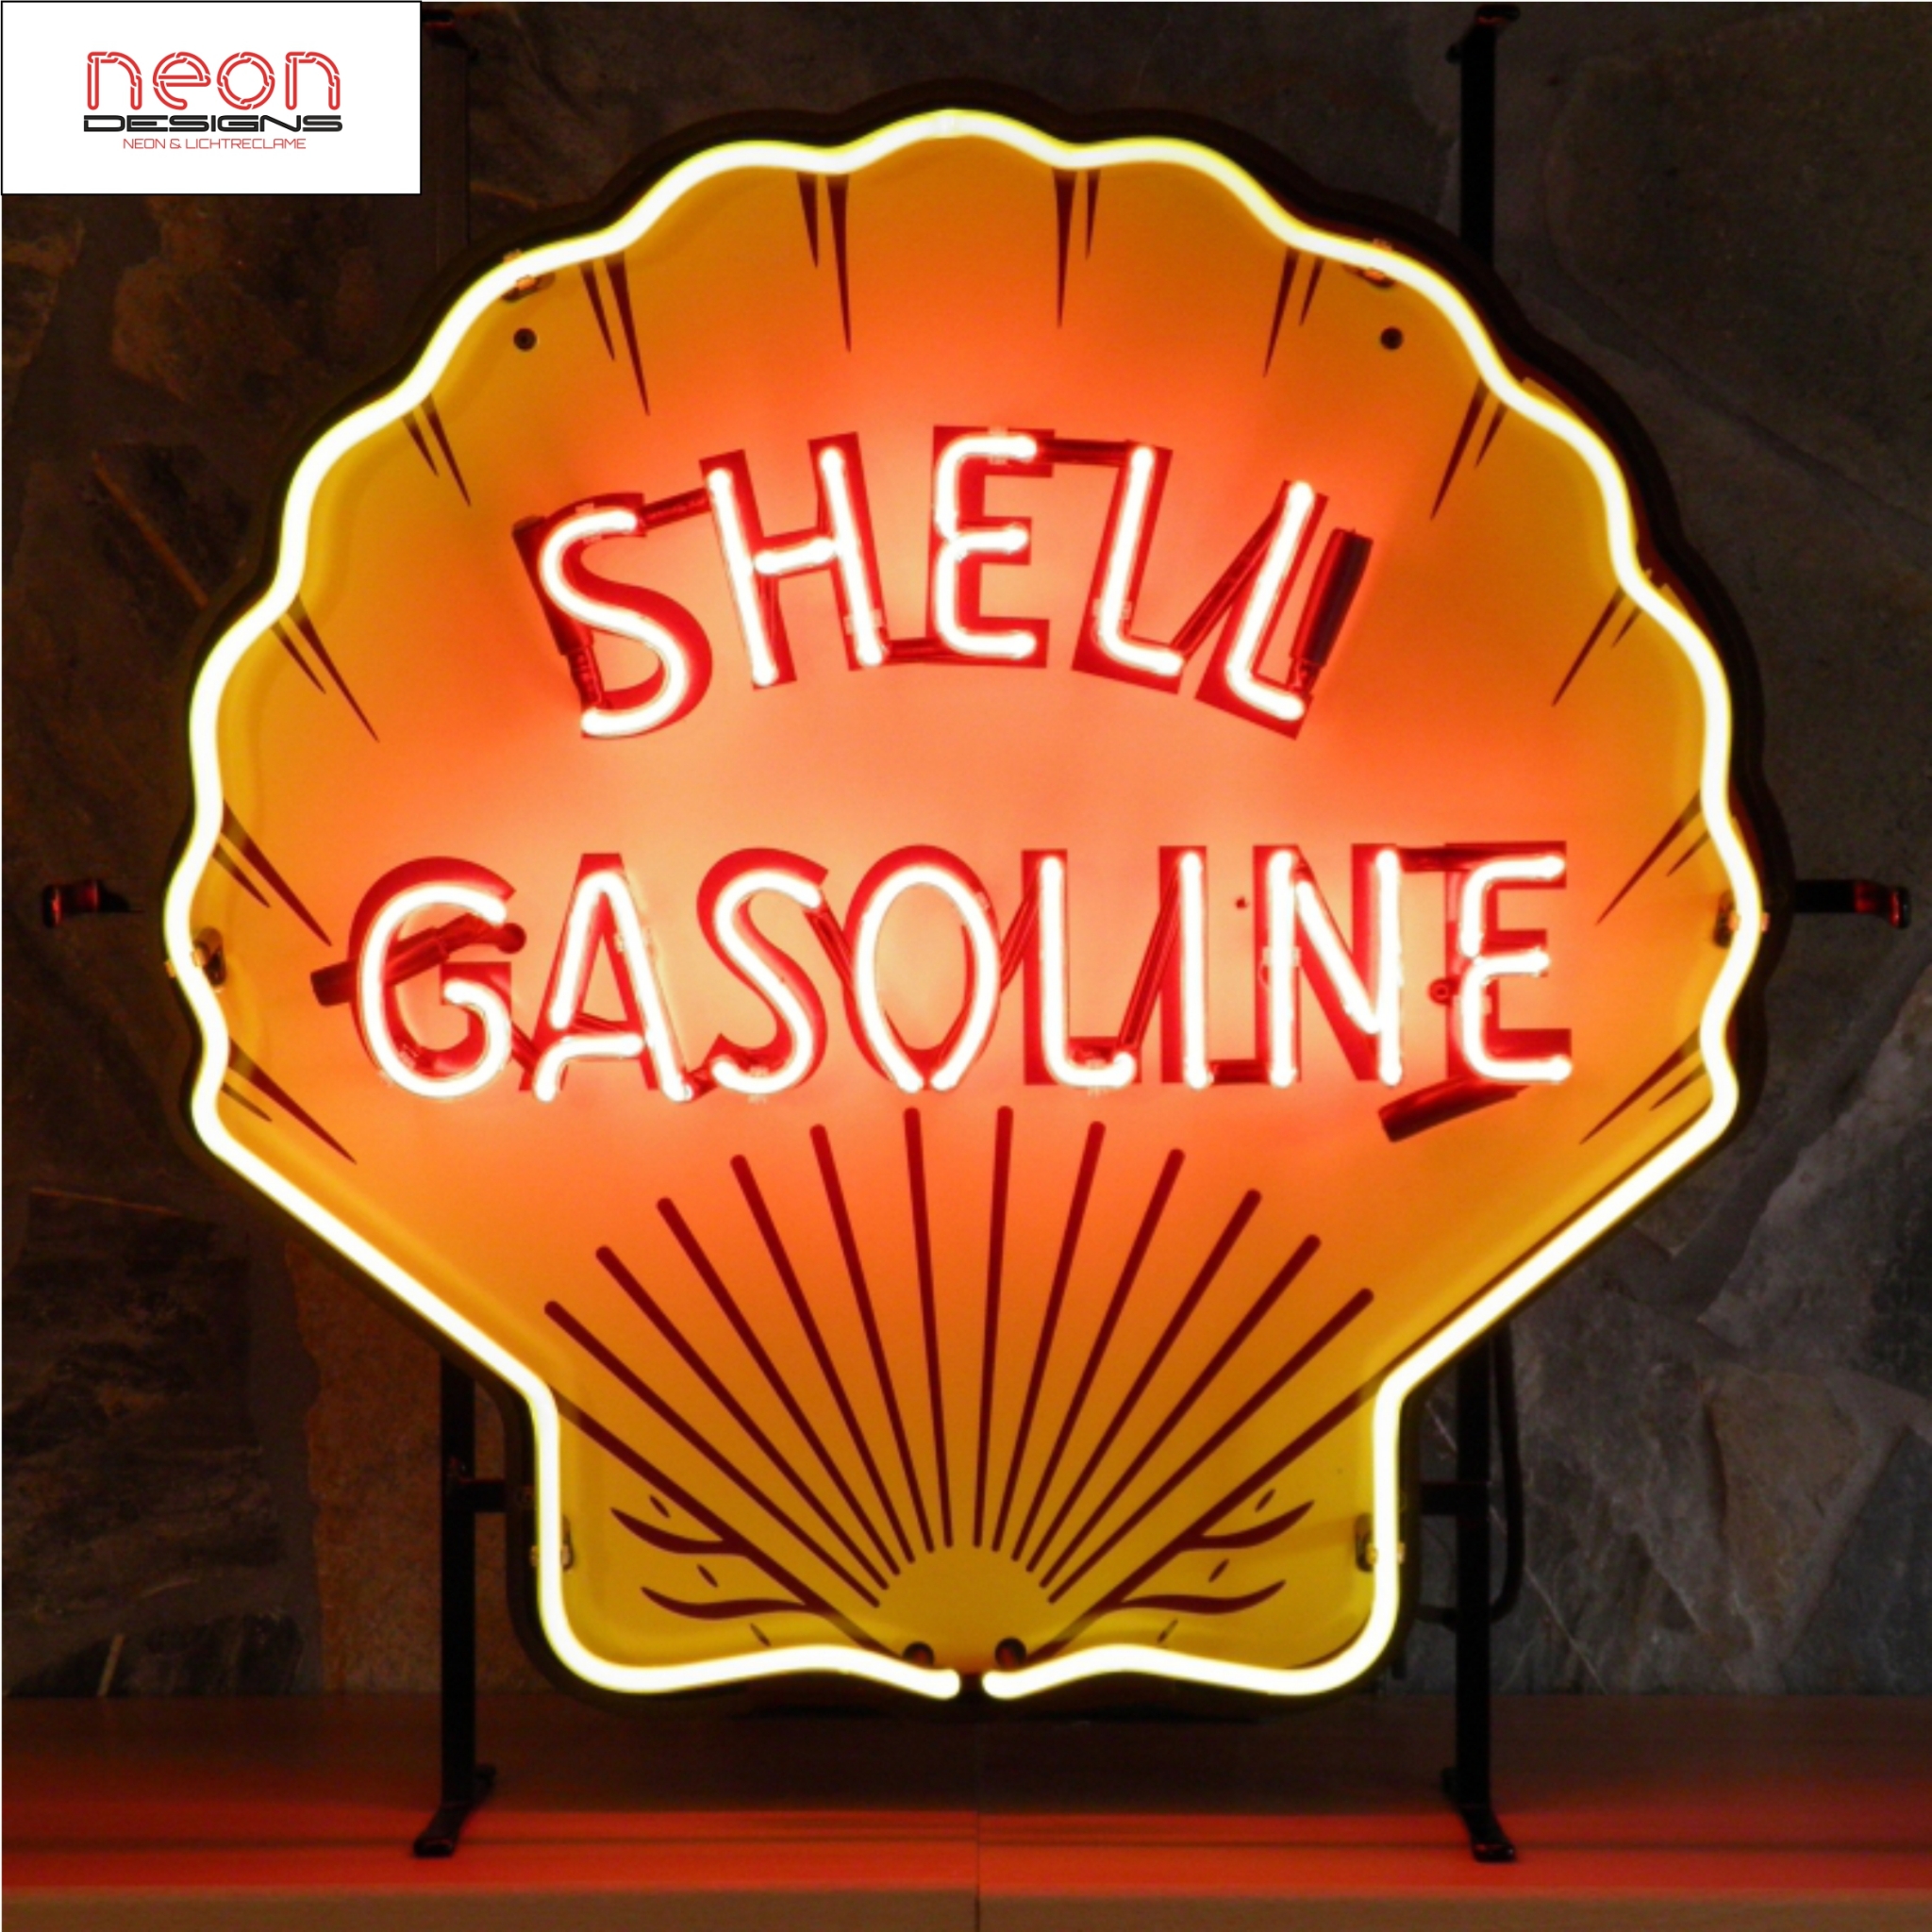 neon SHell gasoline